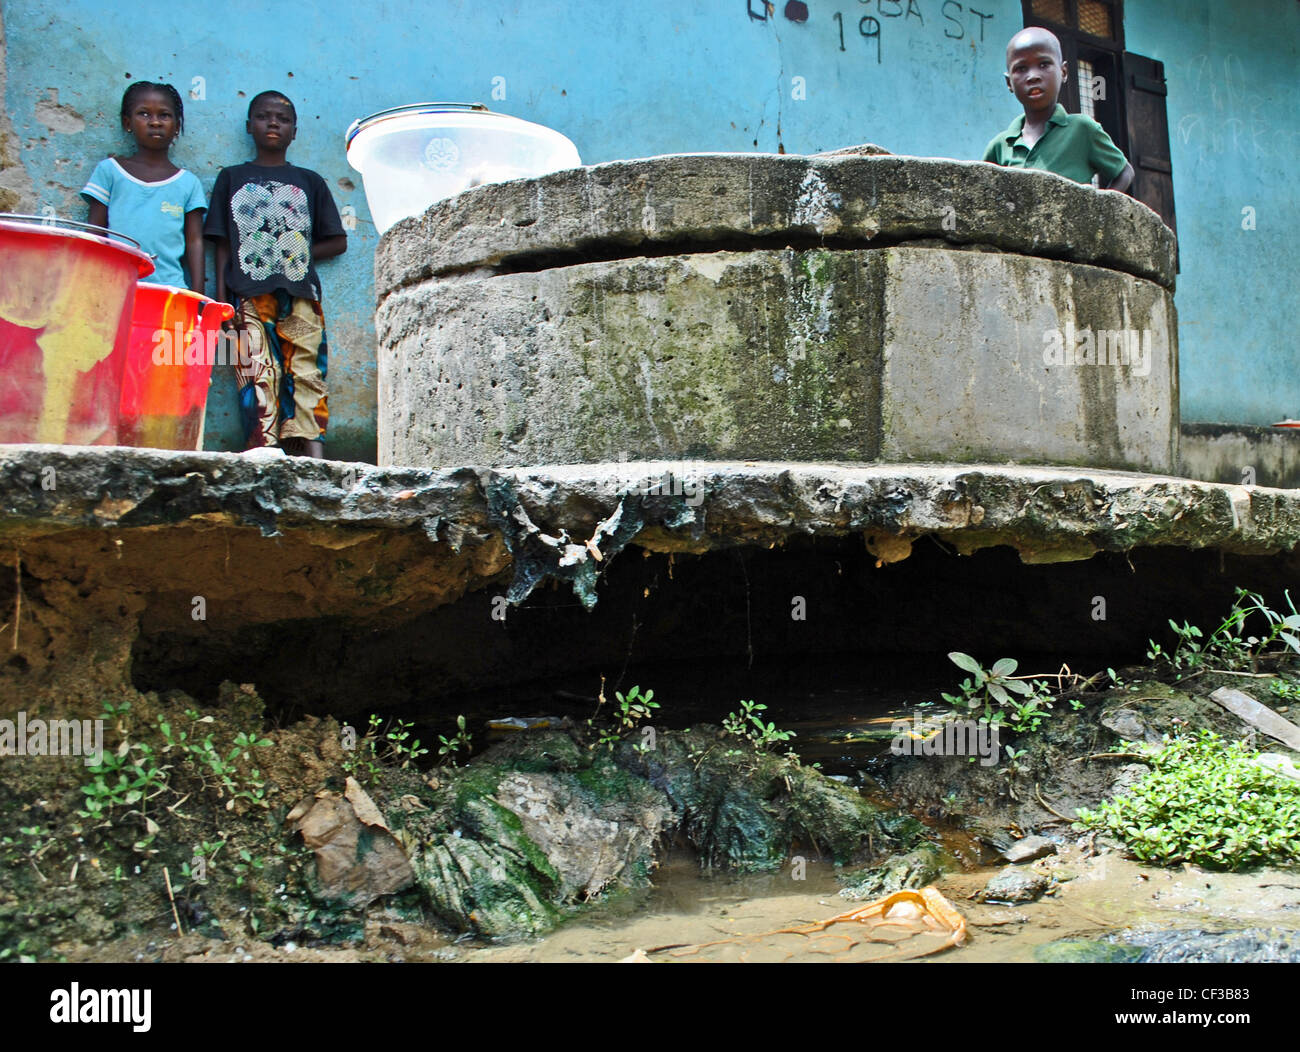 L'eau sale dans un bien endommagé par l'érosion à Kenema, Sierra Leone Banque D'Images